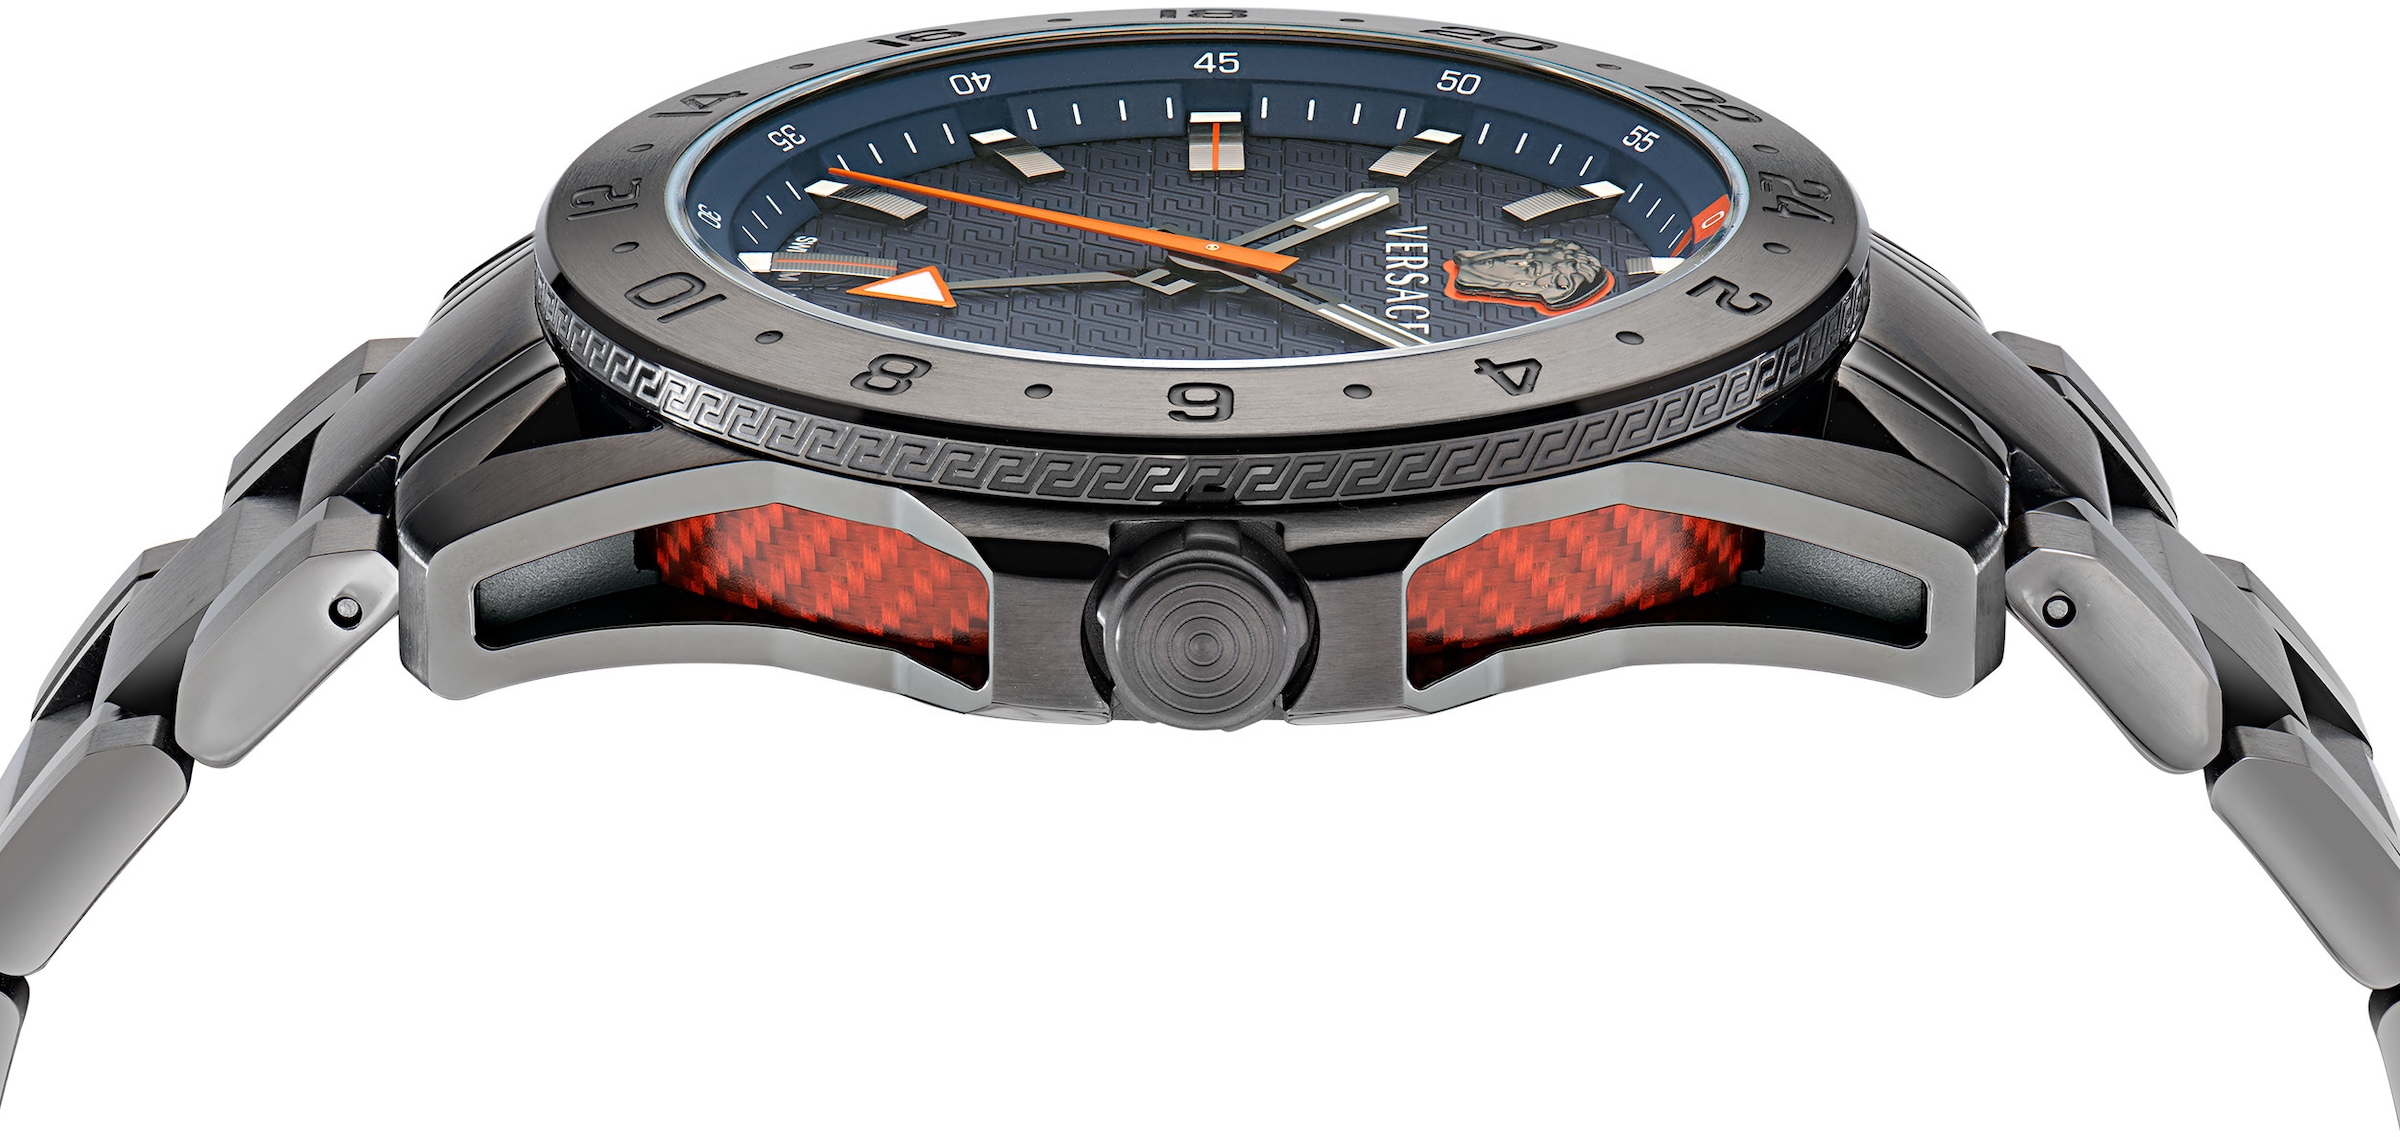 Versace Schweizer Uhr »SPORT TECH GMT VE2W00422«